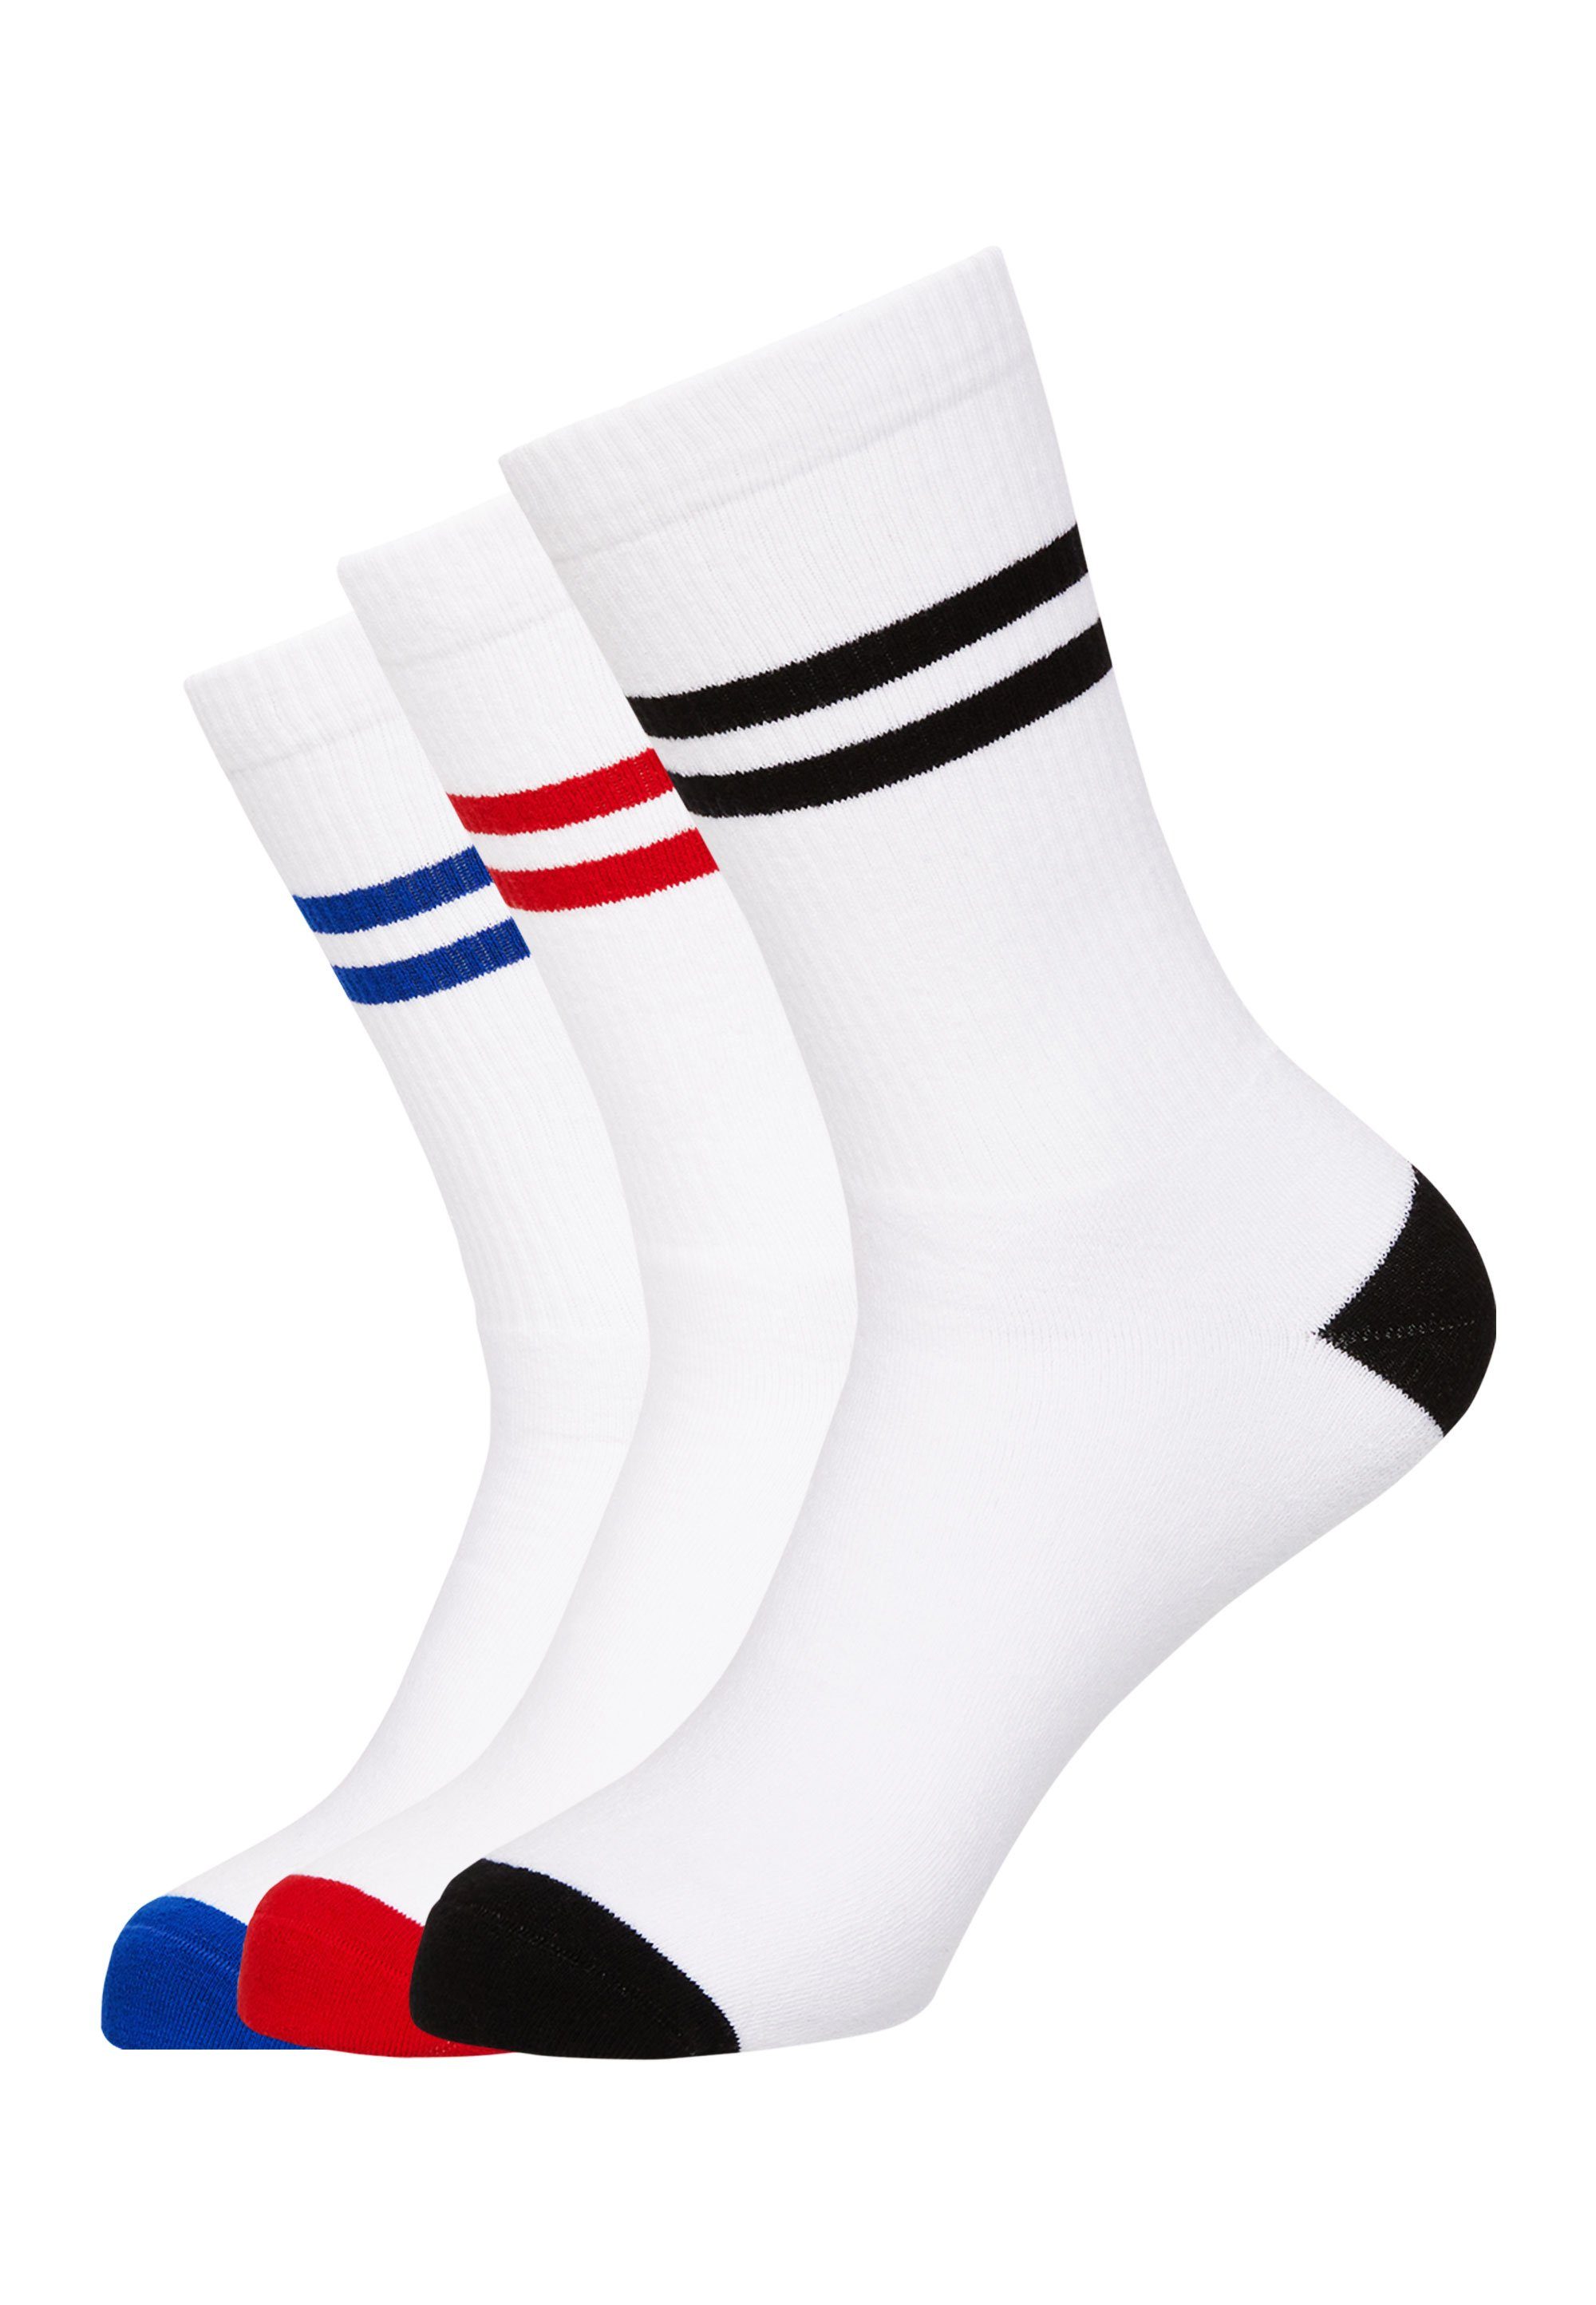 Mxthersocker Socken CLASSIC - WHATS THE RACKET (3-Paar) in kräftigen Farben weiß